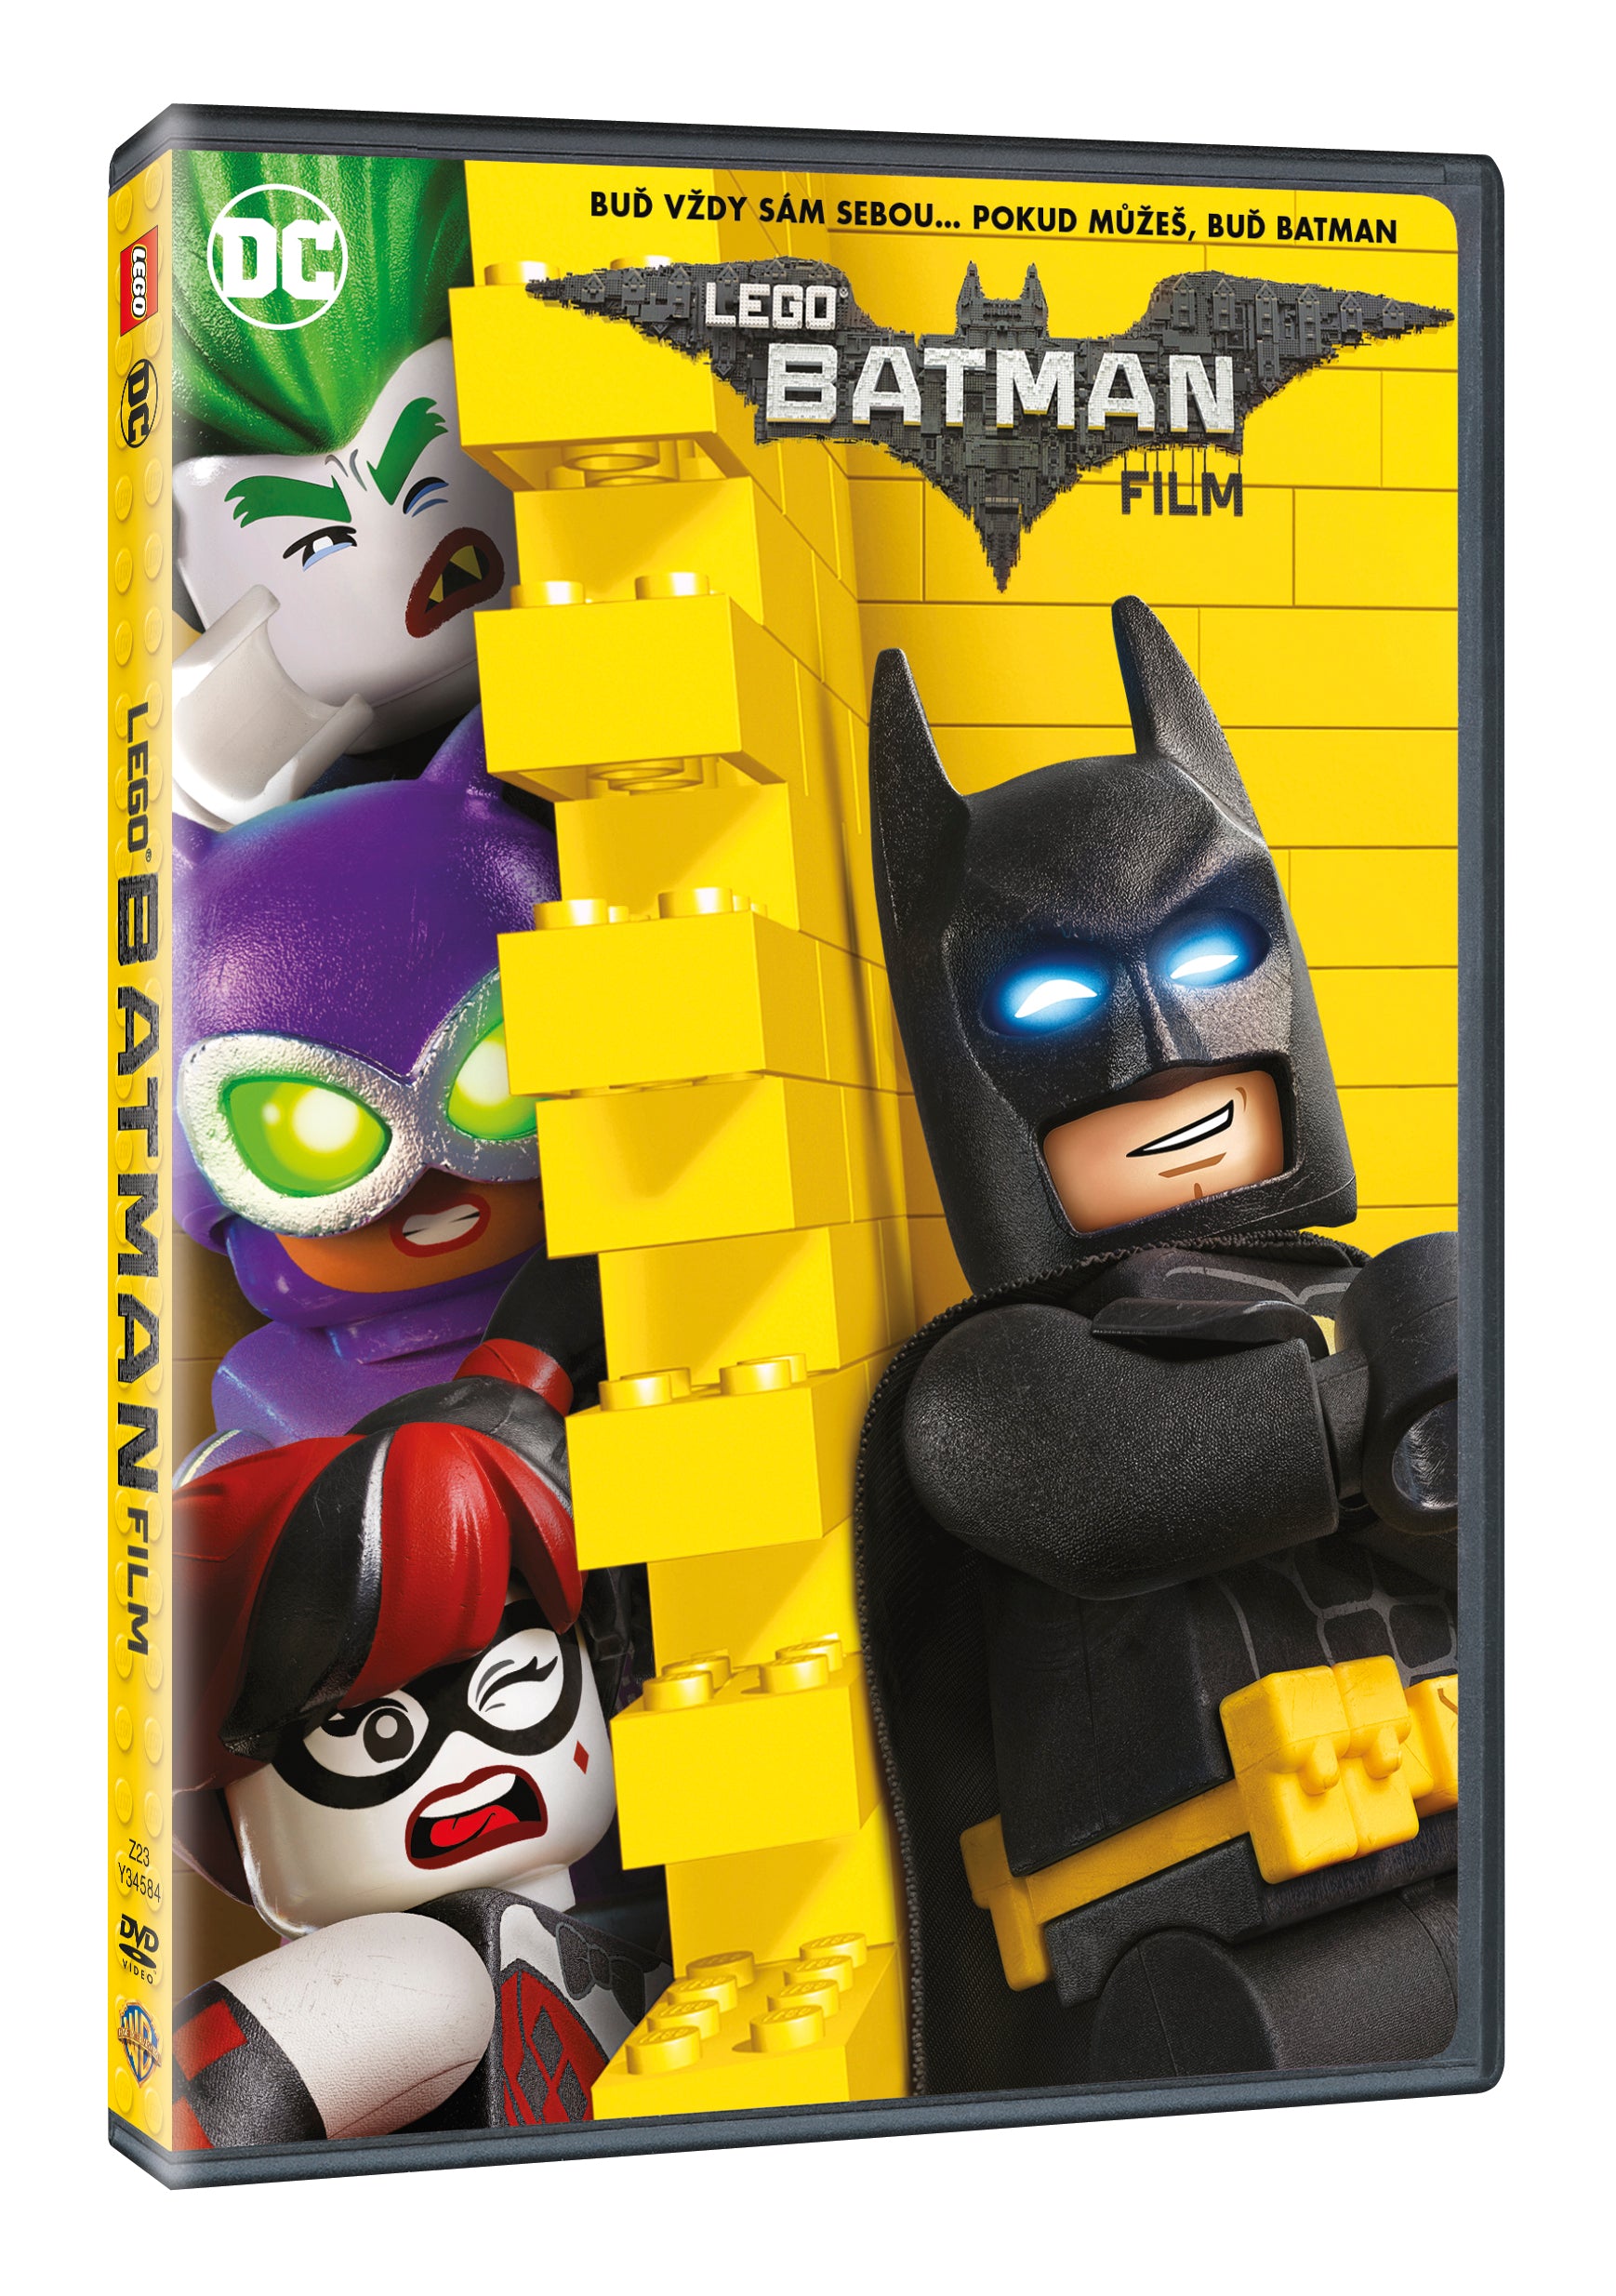 Lego Batman Film DVD / The LEGO Batman Movie